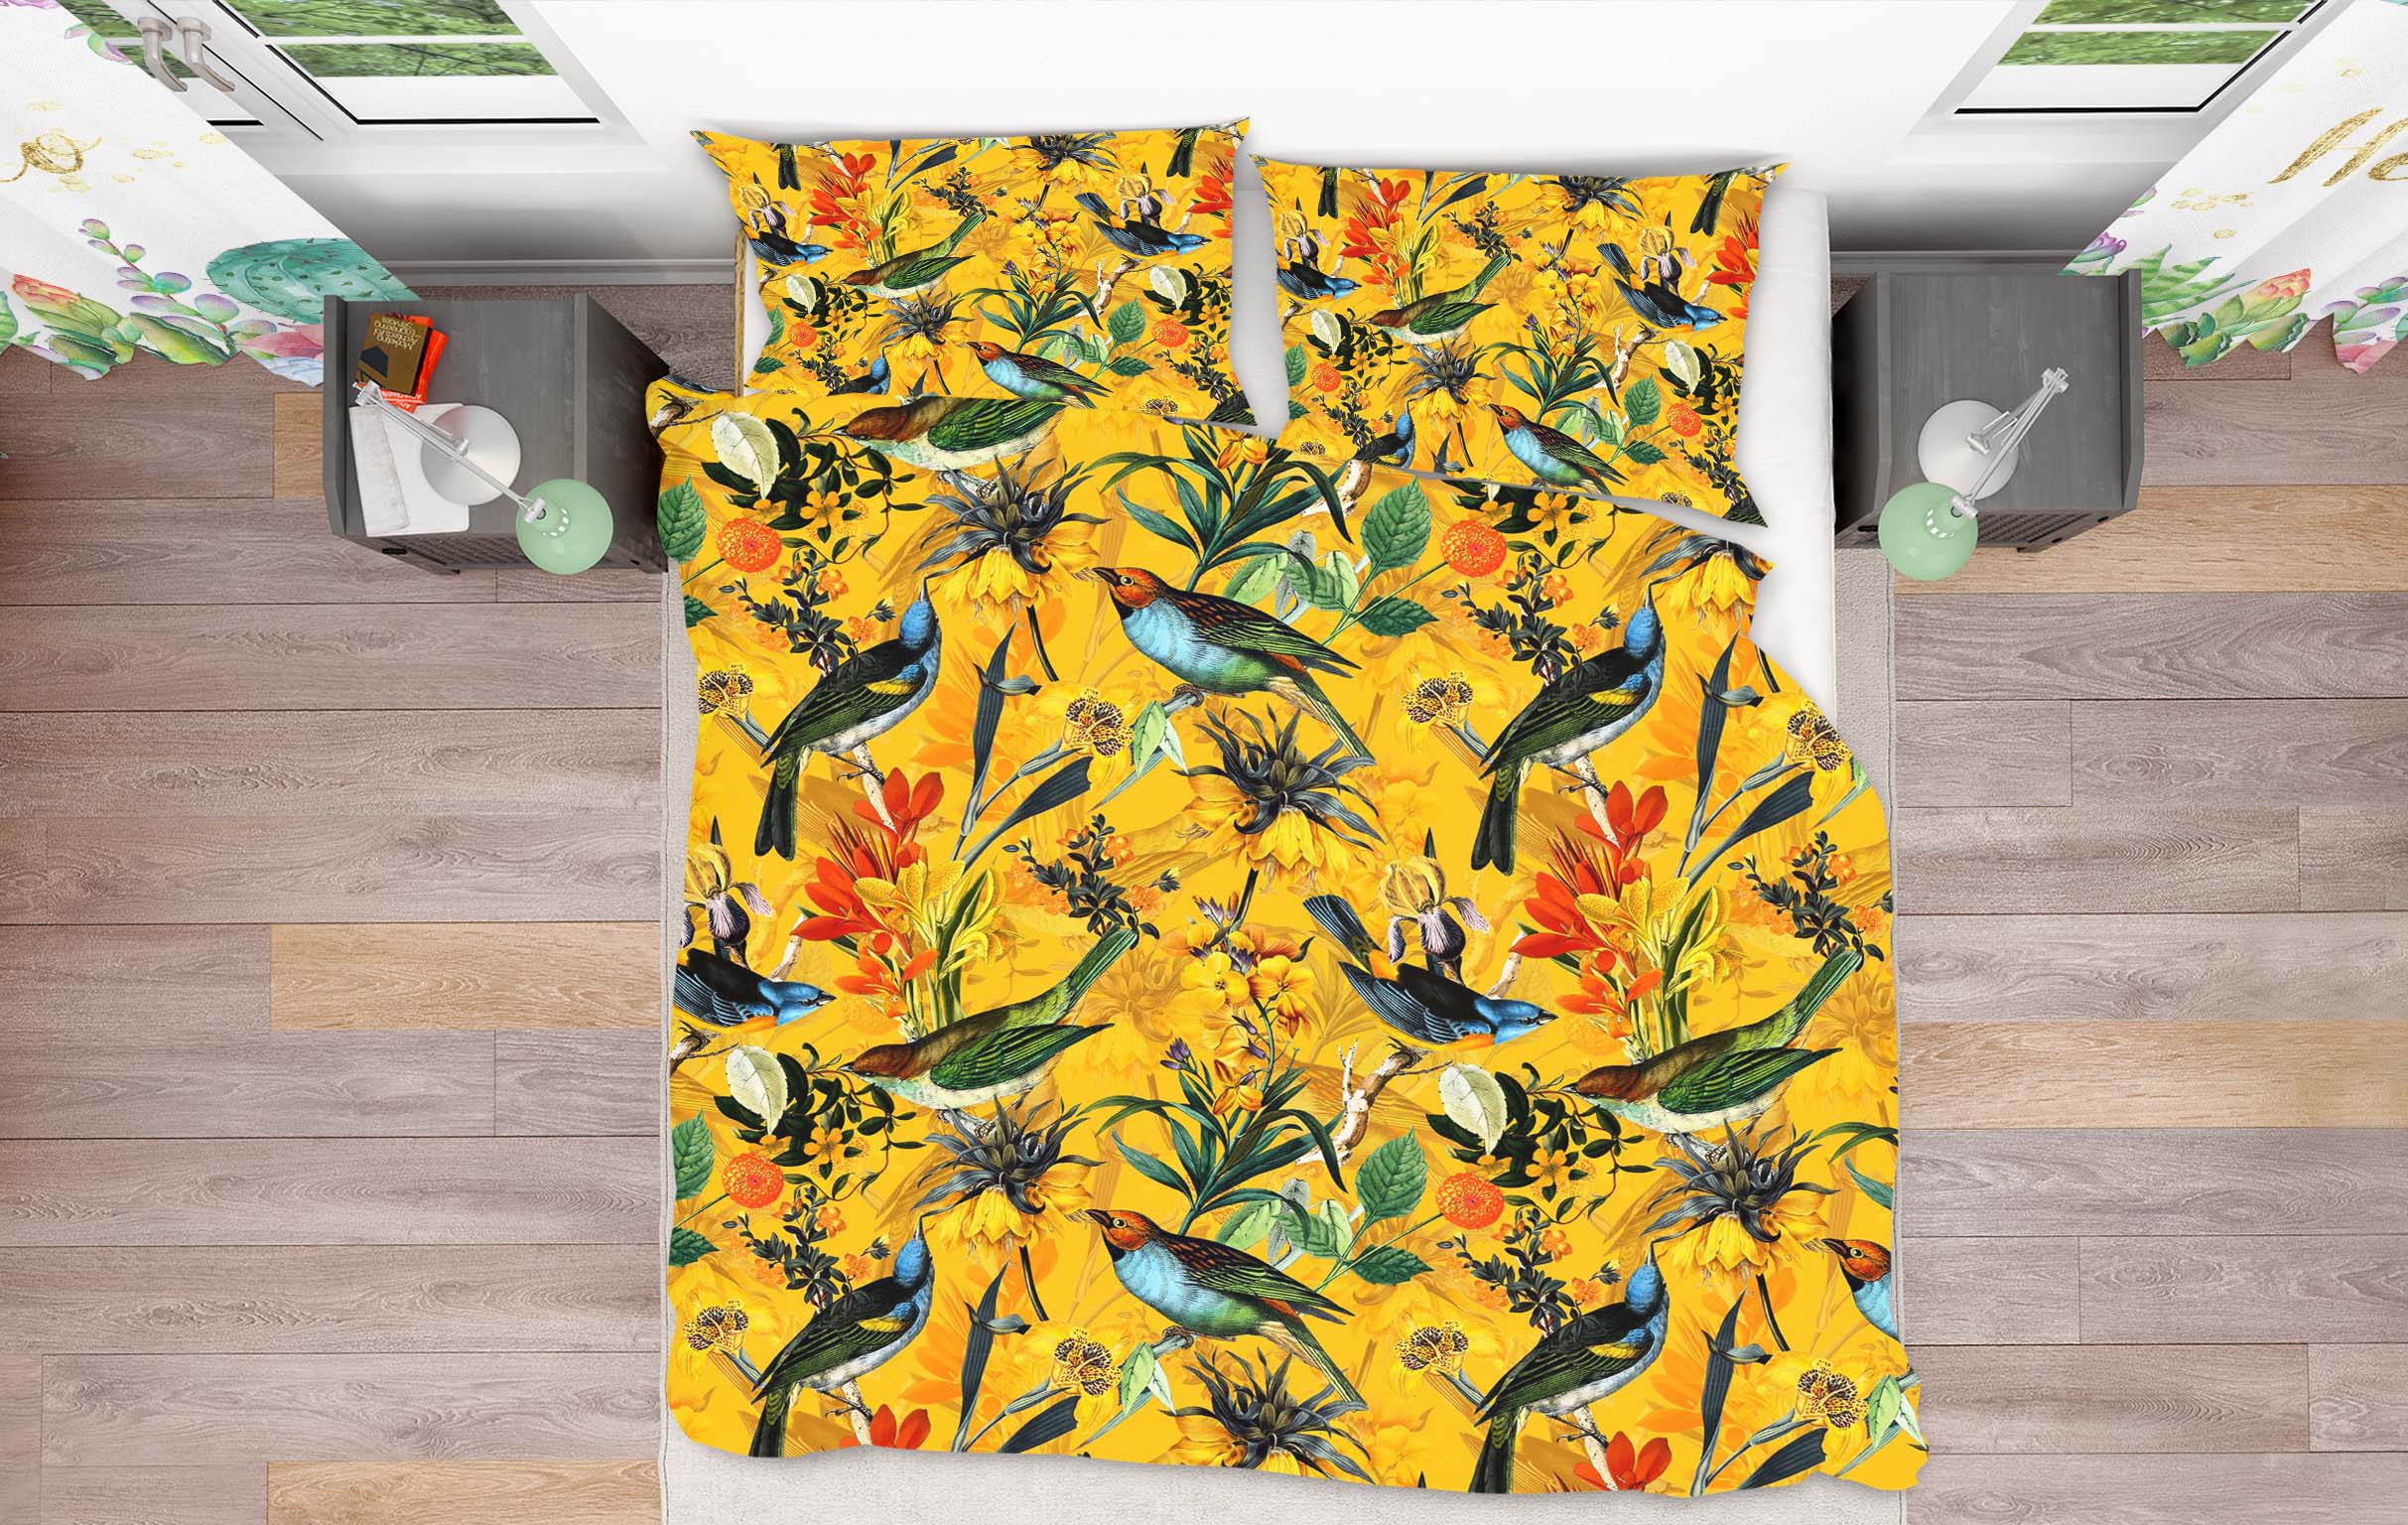 3D Yellow Flower Bird 117 Uta Naumann Bedding Bed Pillowcases Quilt